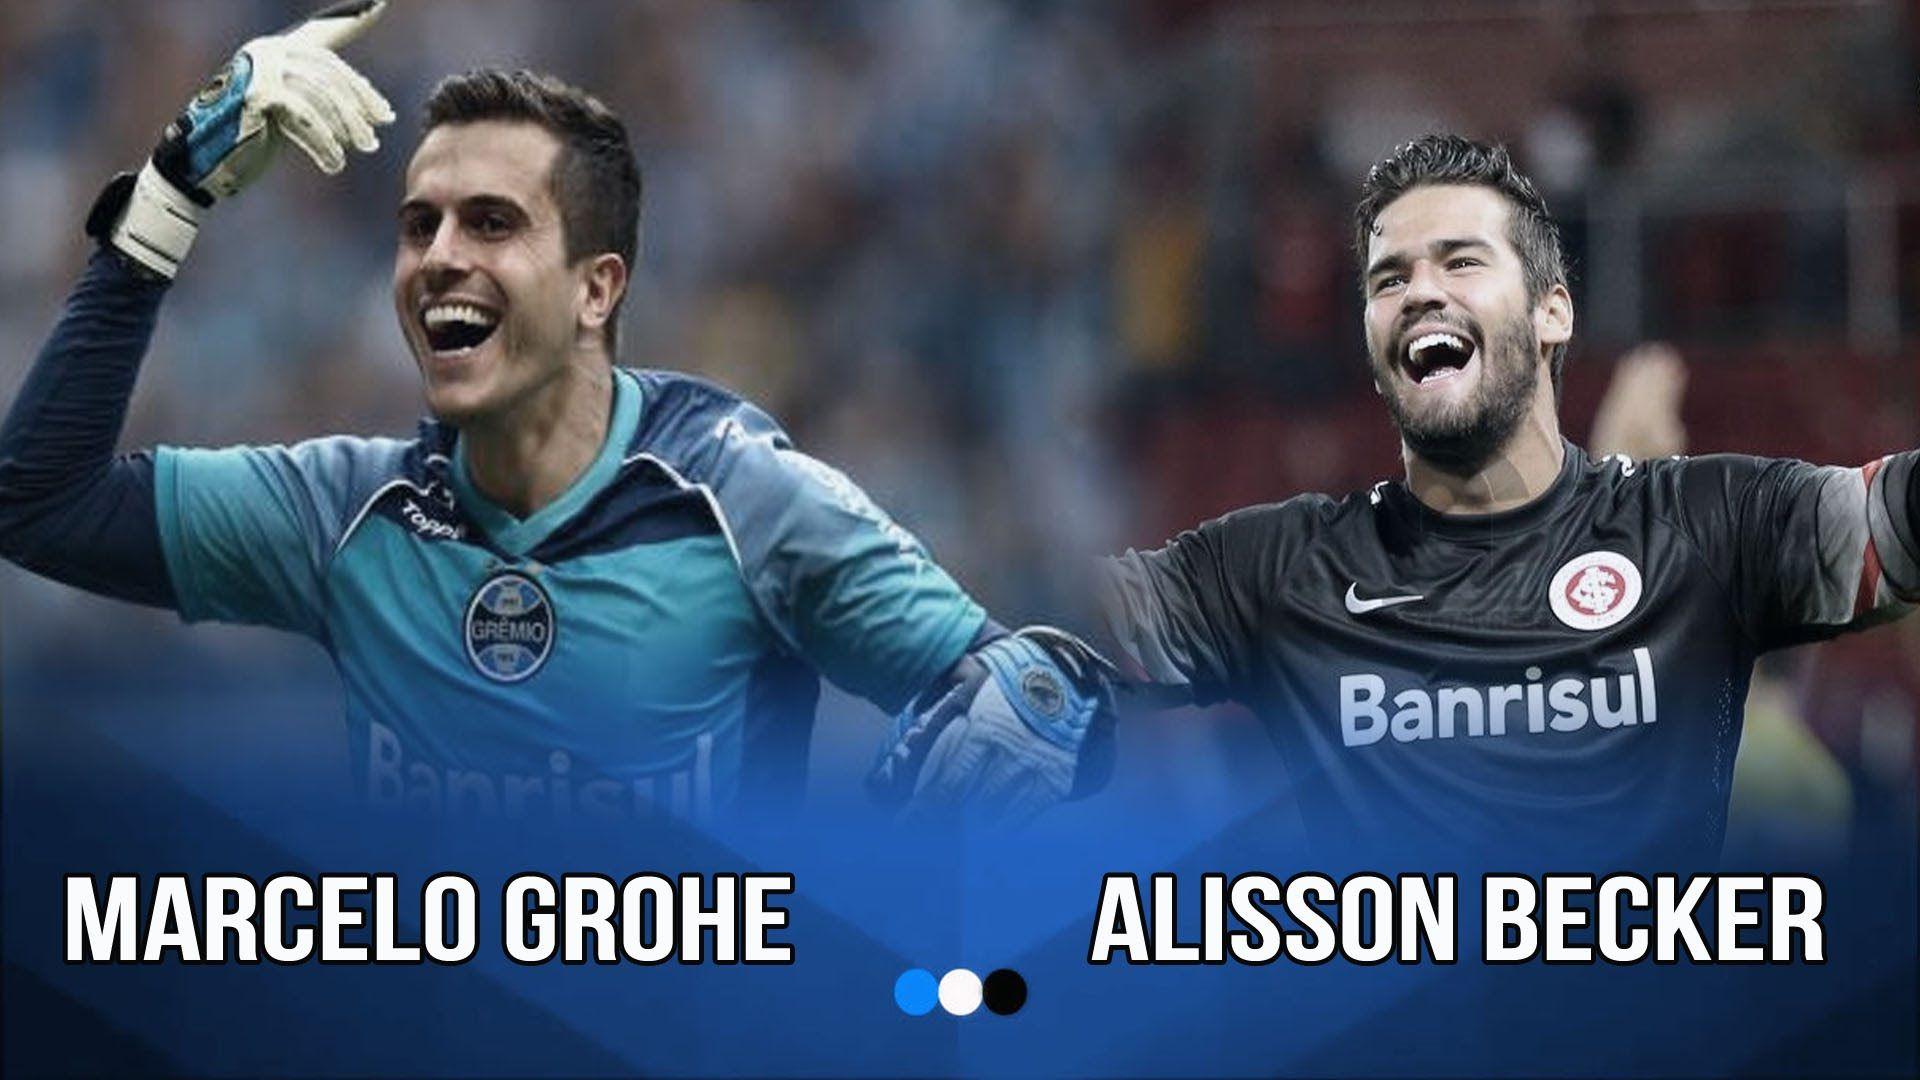 O Melhores goleiros atualmente Marcelo Grohe e Alisson Becker